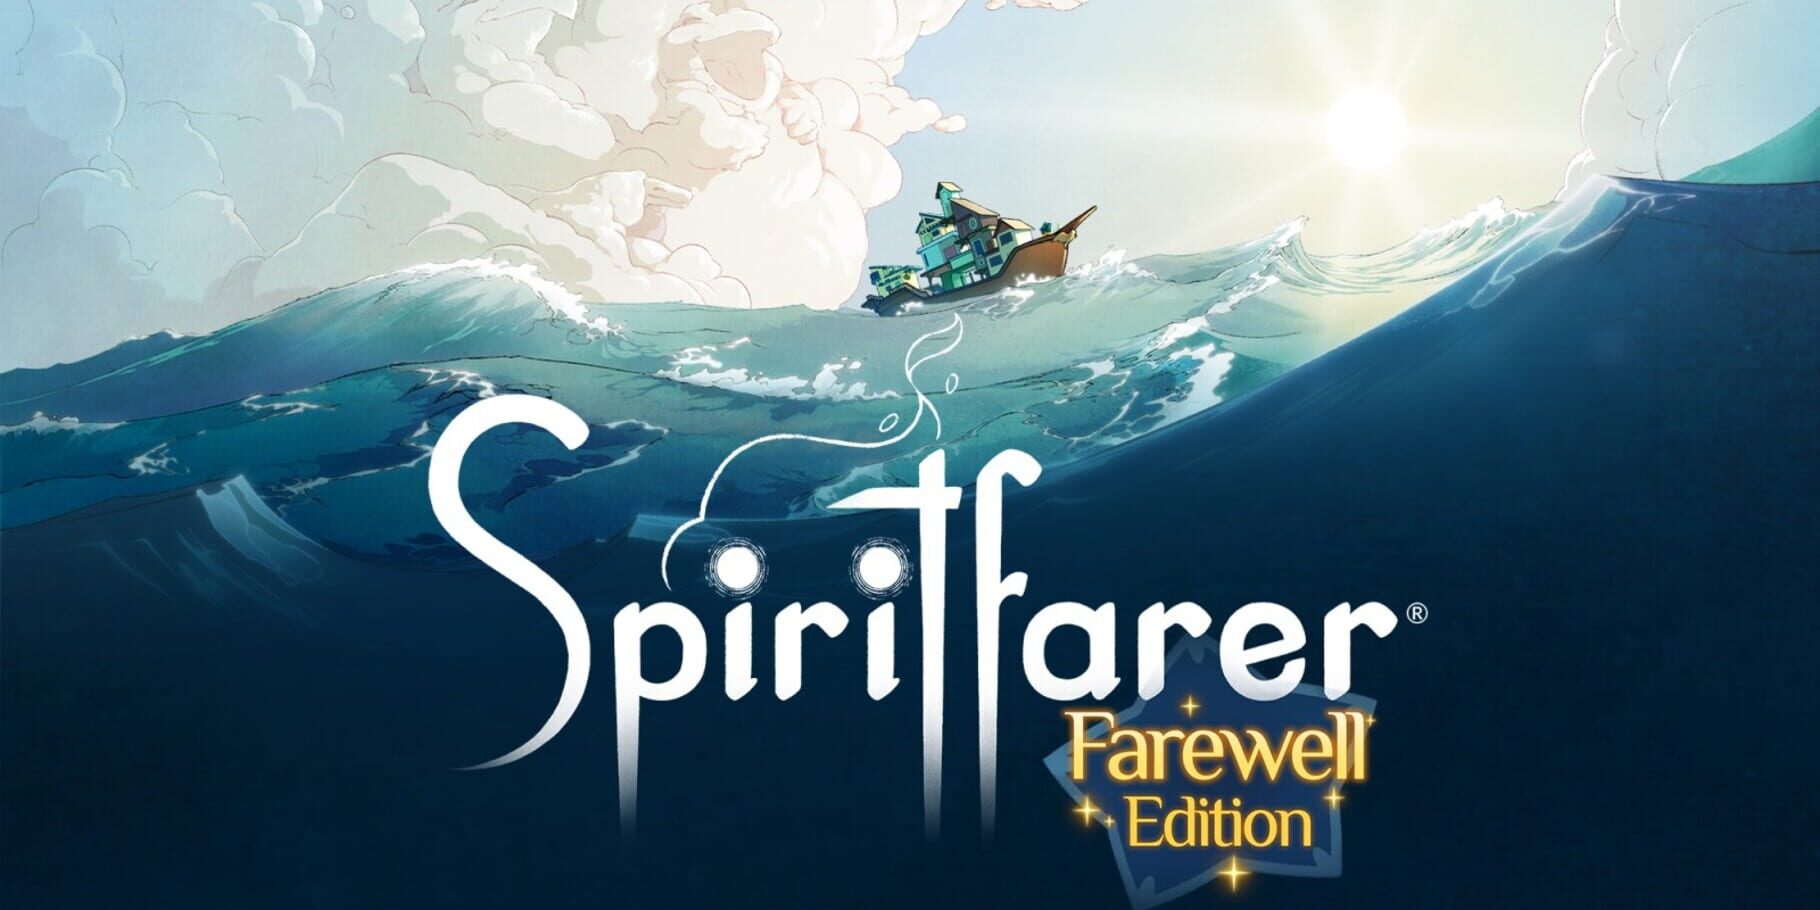 Spiritfarer: Farewell Edition artwork